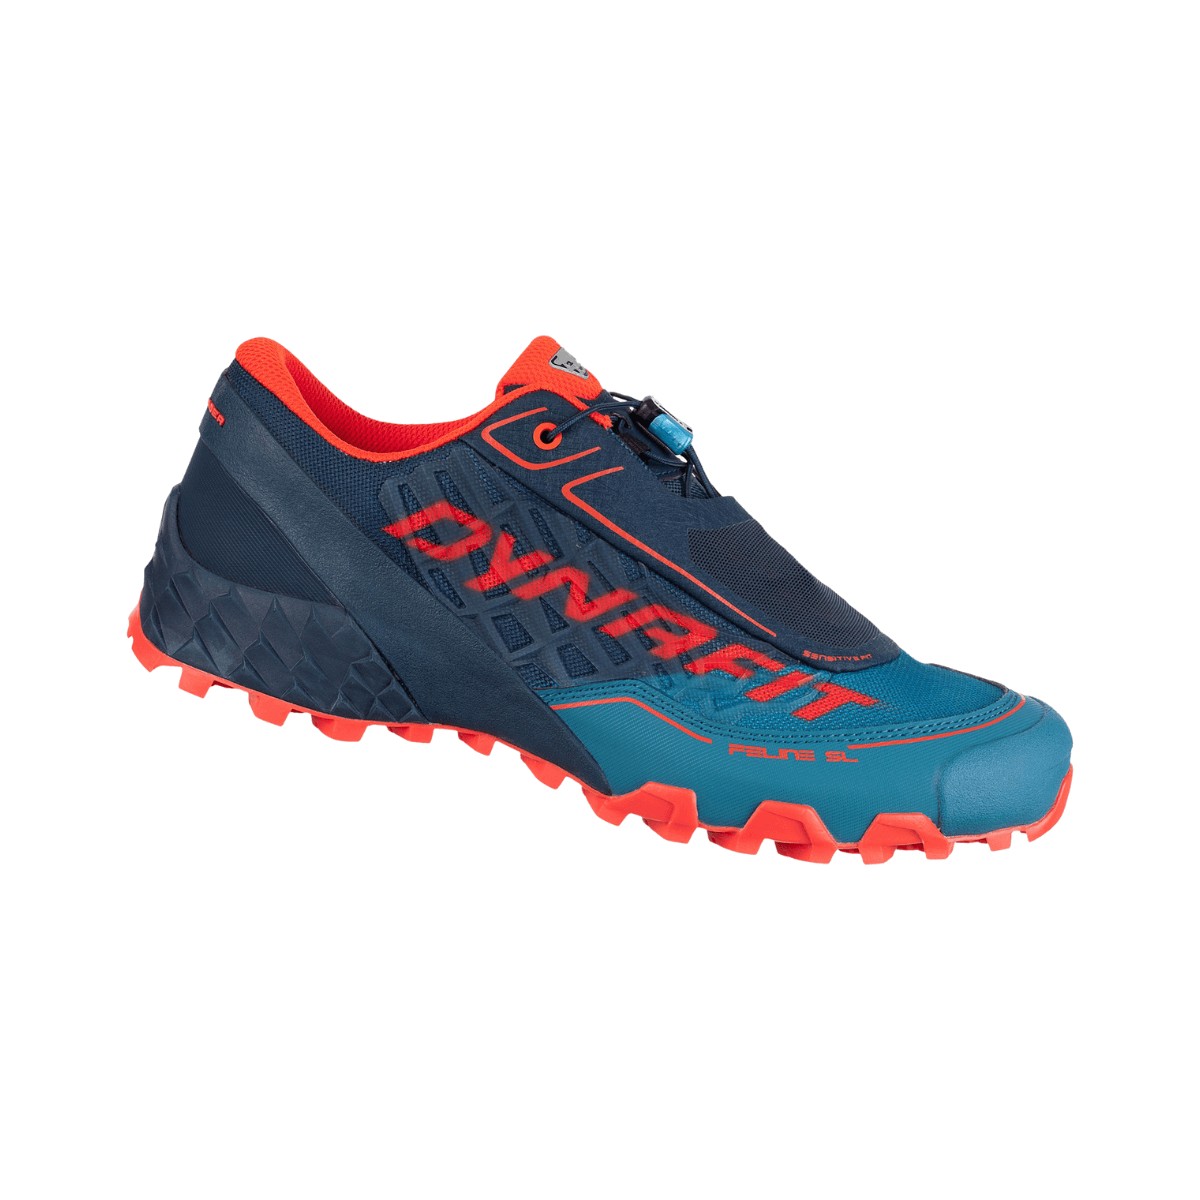 Schuhe Dynafit Feline SL Blau Rot, Größe 42 - EUR